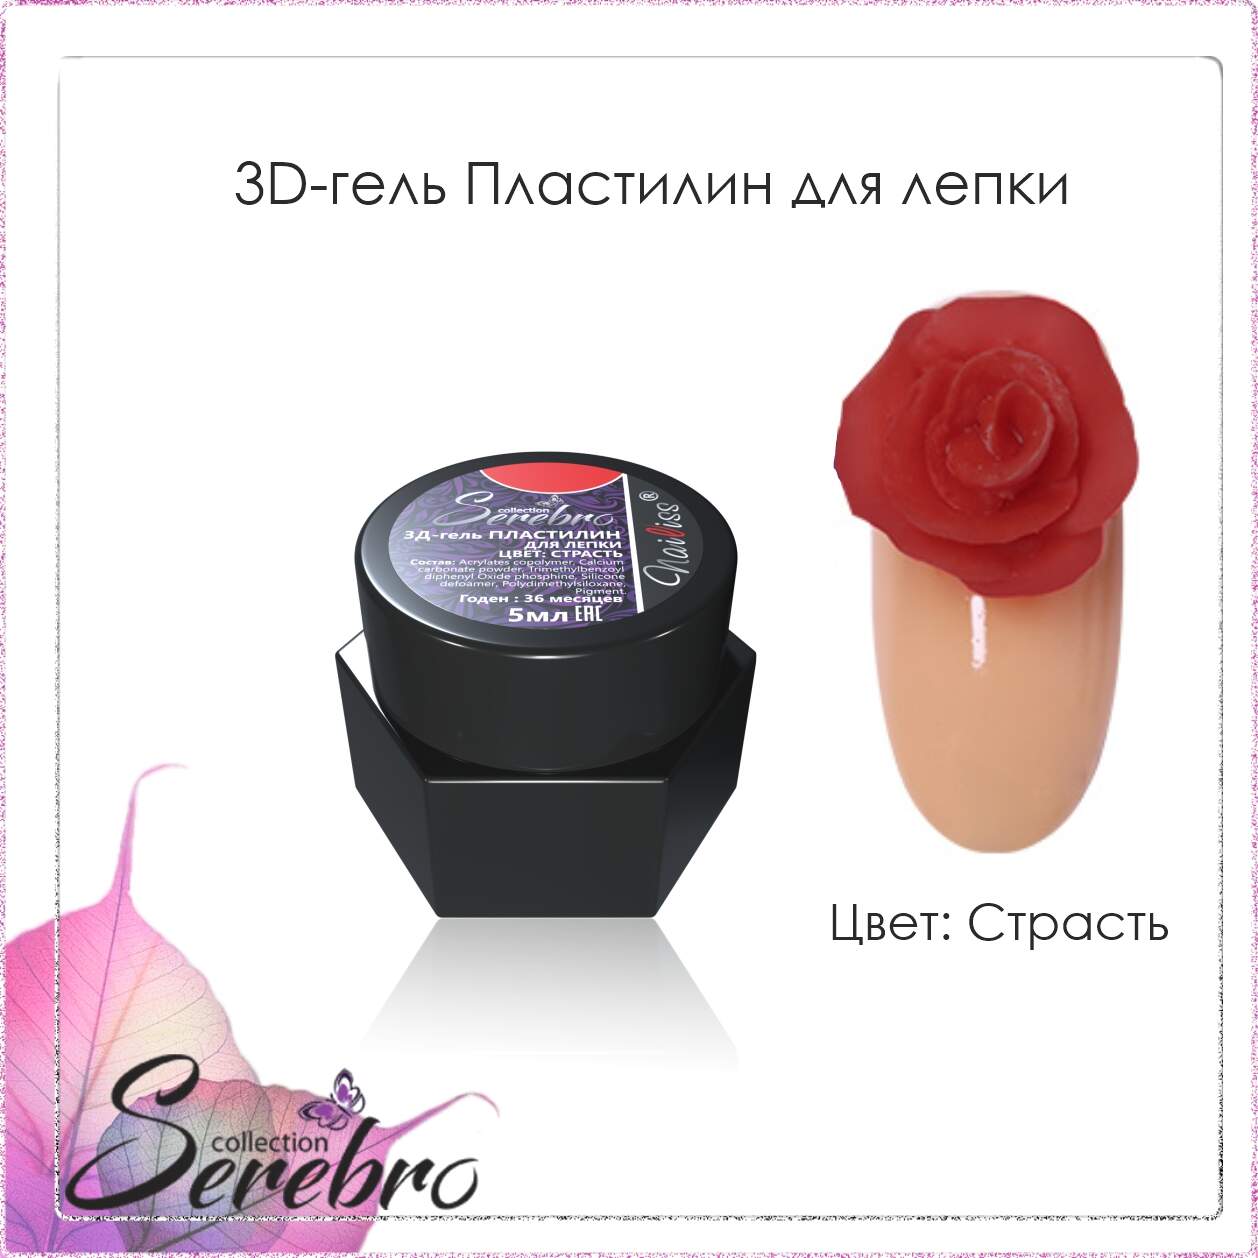 3D гель Пластилин для лепки "Serebro" (страсть), 5 мл